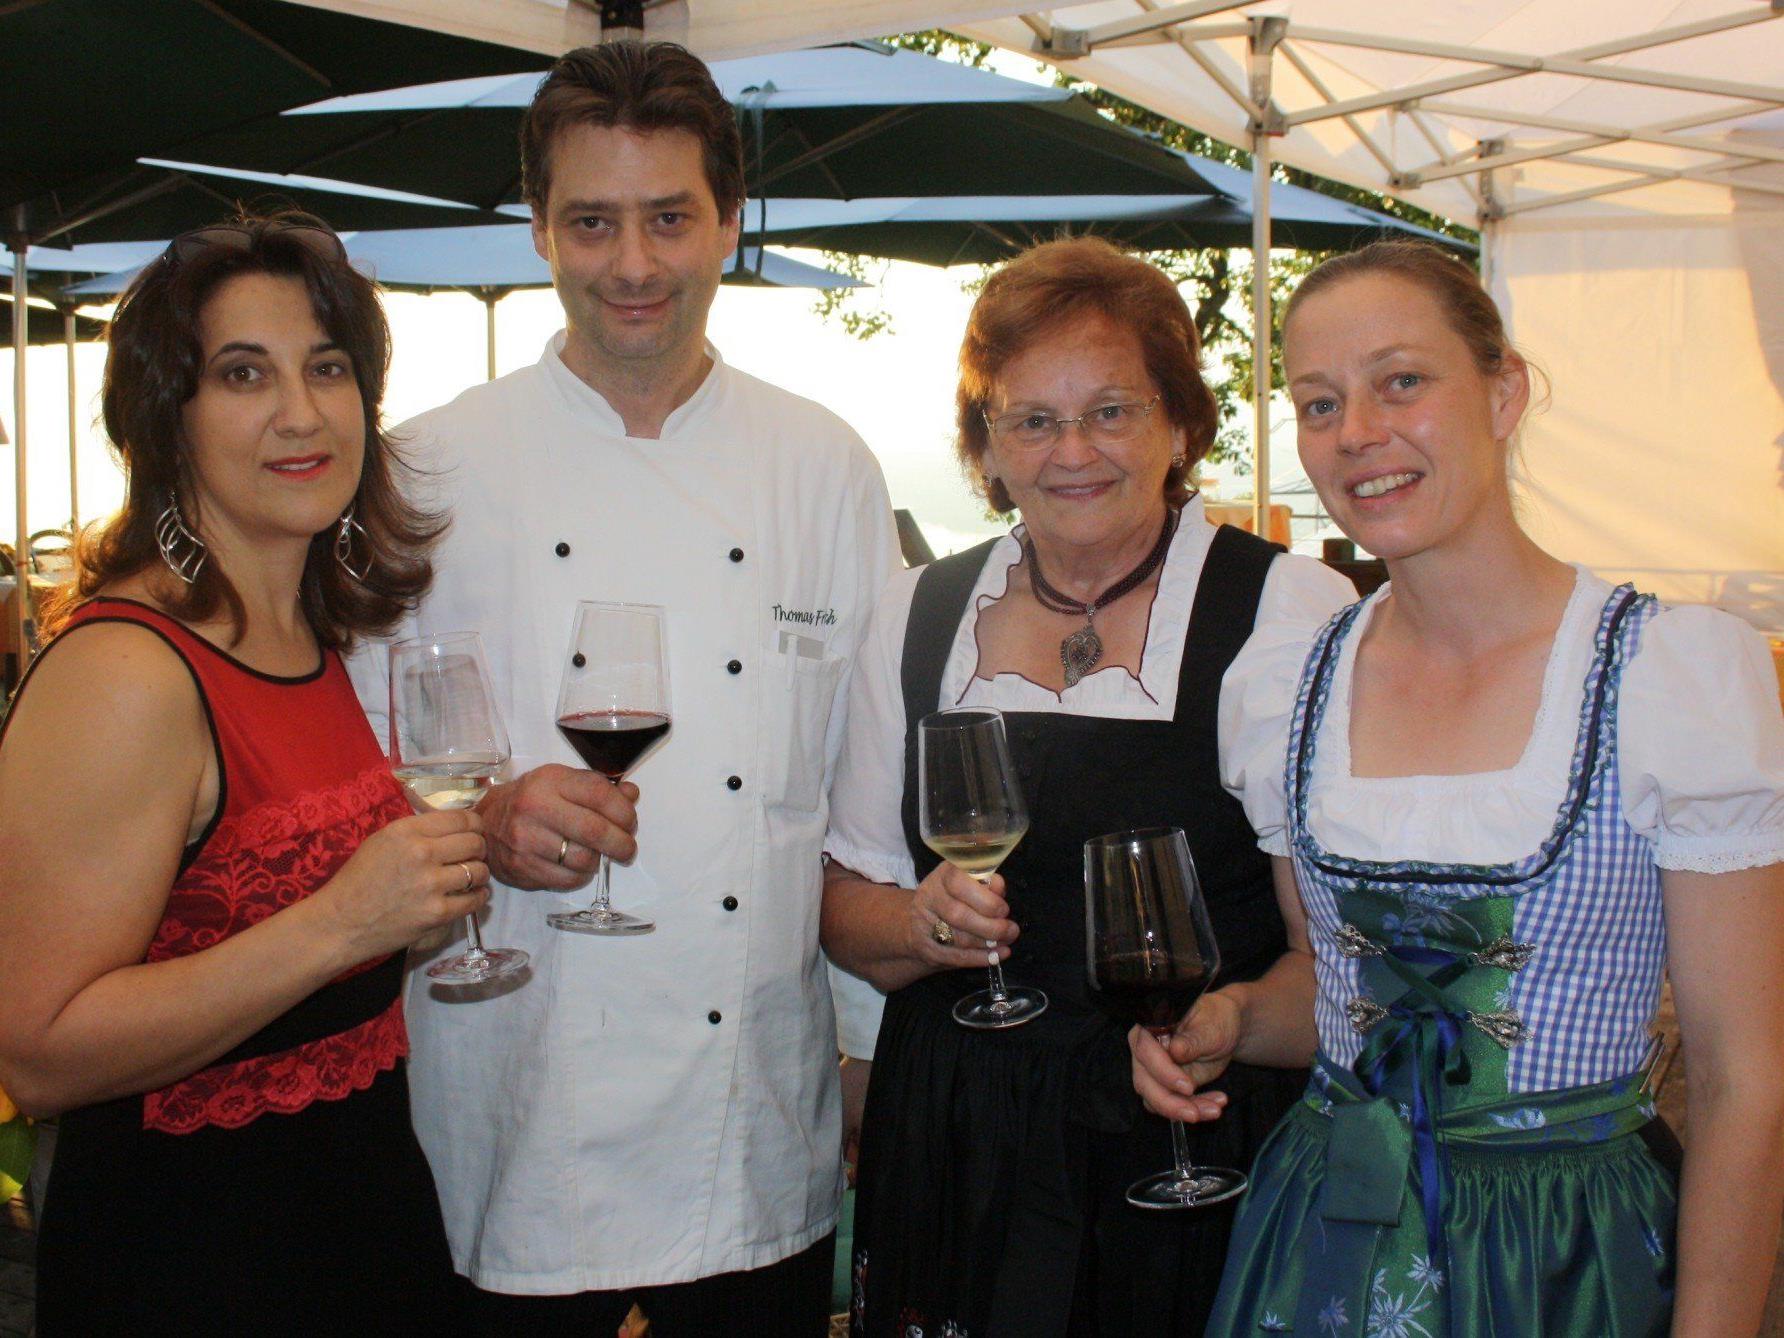 Diana Sicher-Fritsch, Thomas Fritsch, Seniorchefin Resi Fritsch und Beate Fritsch als bewährte Gastgeber beim traditionellen Weinfest im Berggasthof.